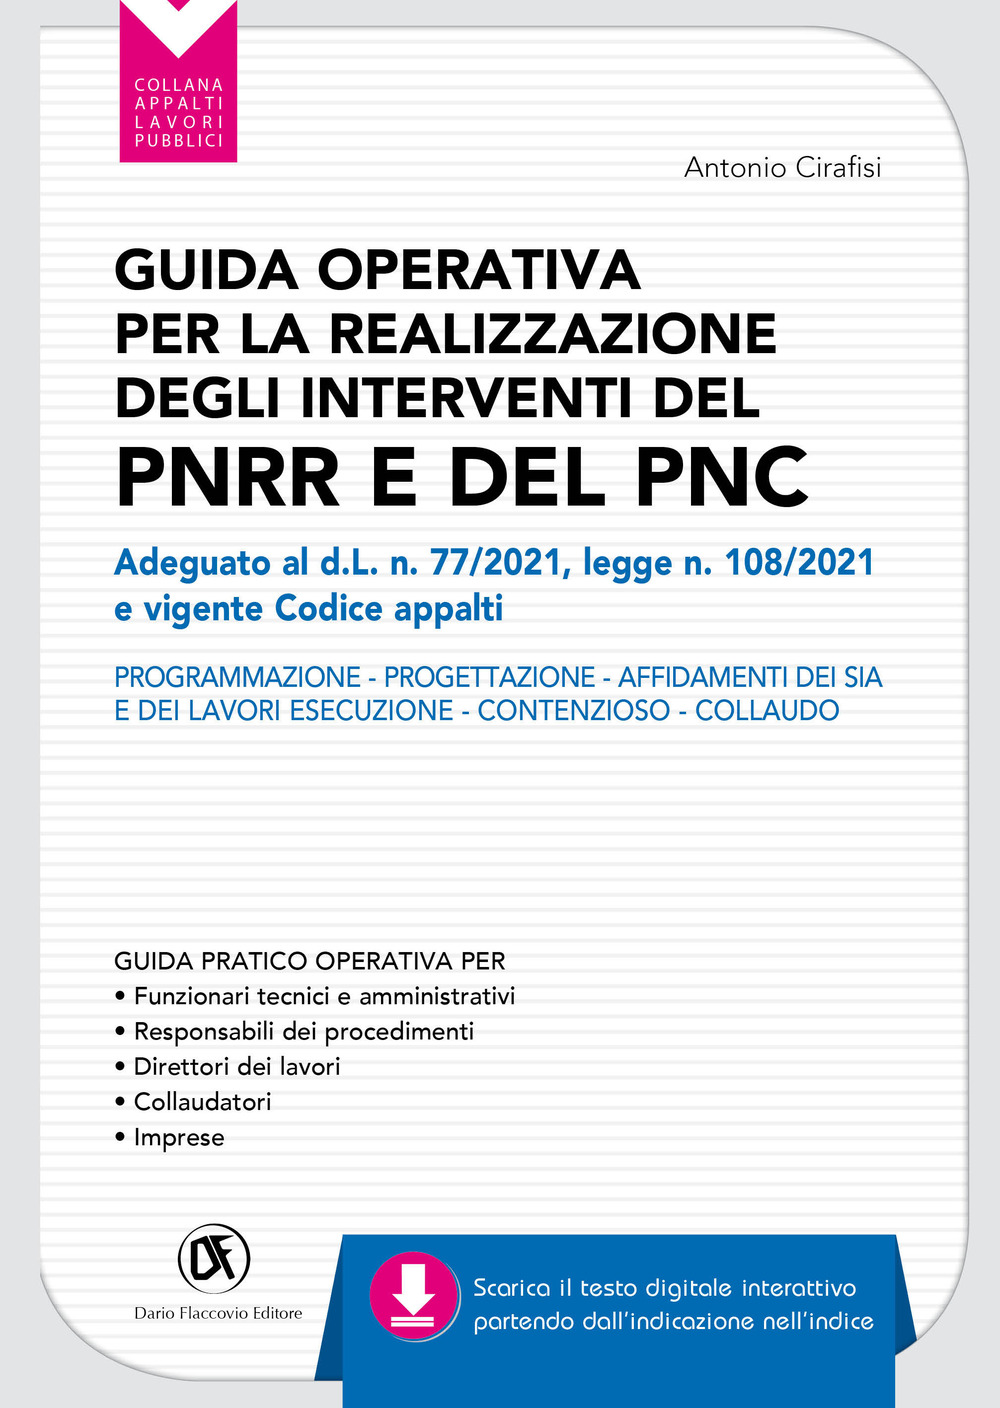 Guida operativa per la realizzazione degli interventi del PNRR e PNC